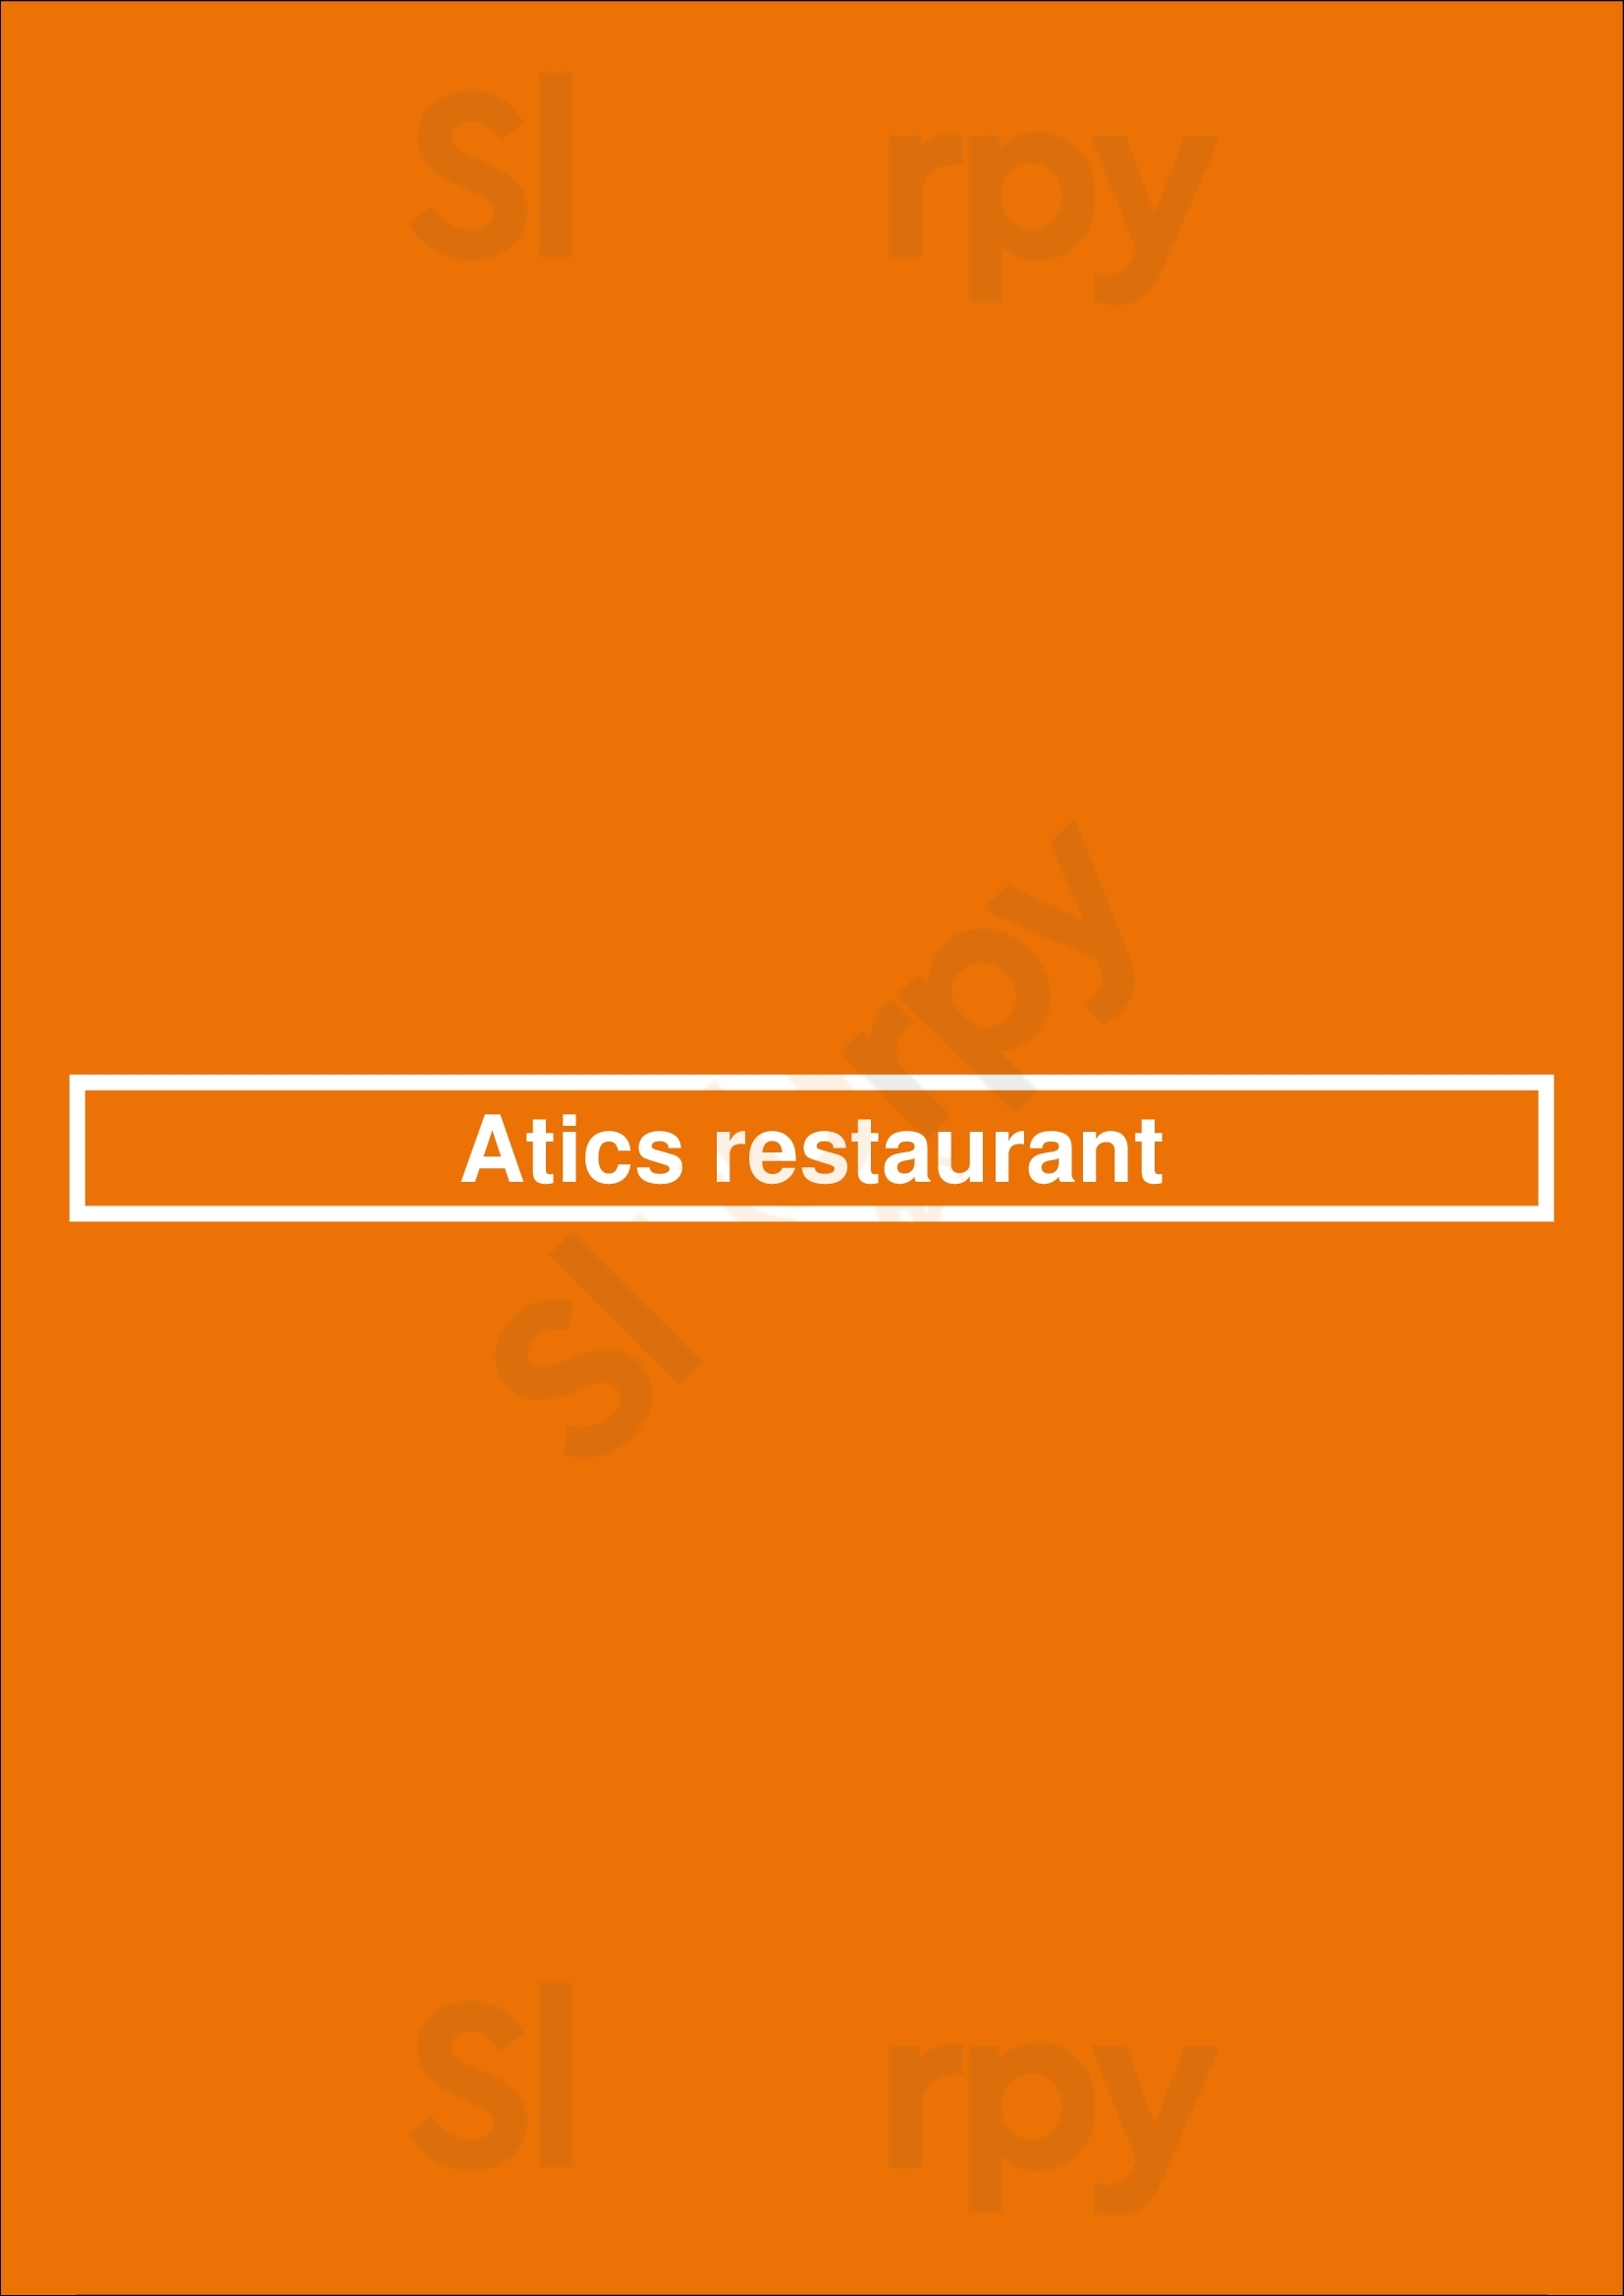 Atics Restaurant Lloret de Mar Menu - 1